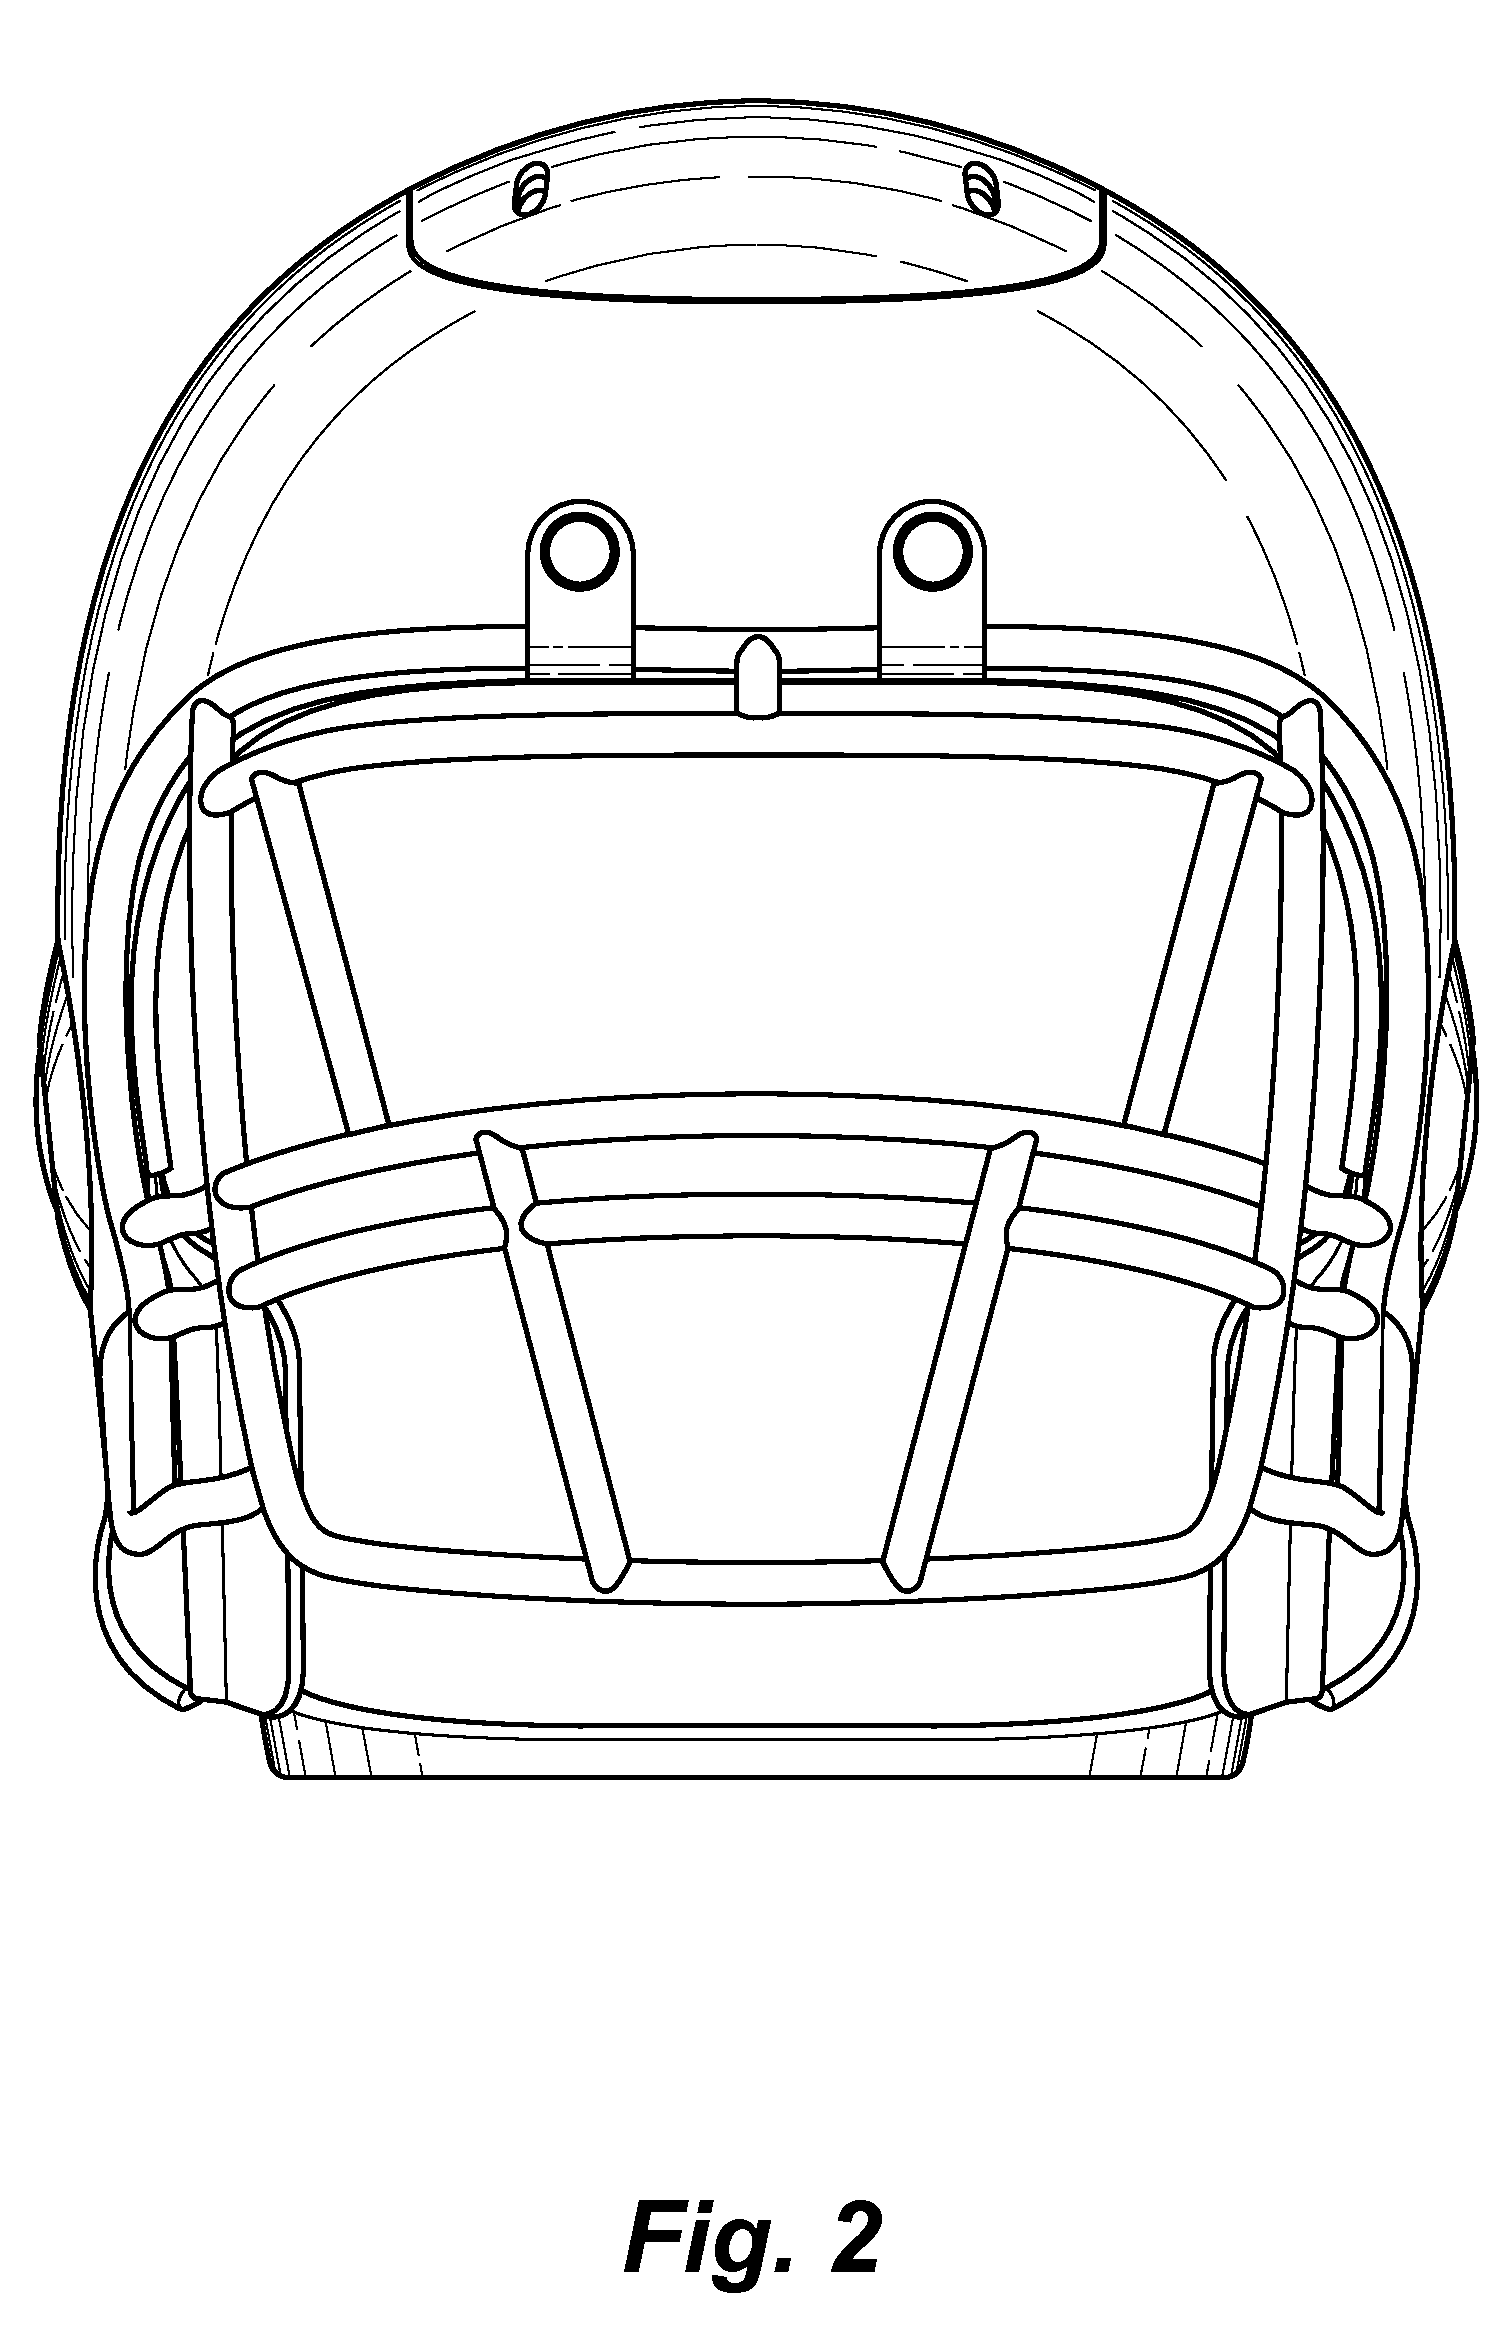 helmet clipart sketch